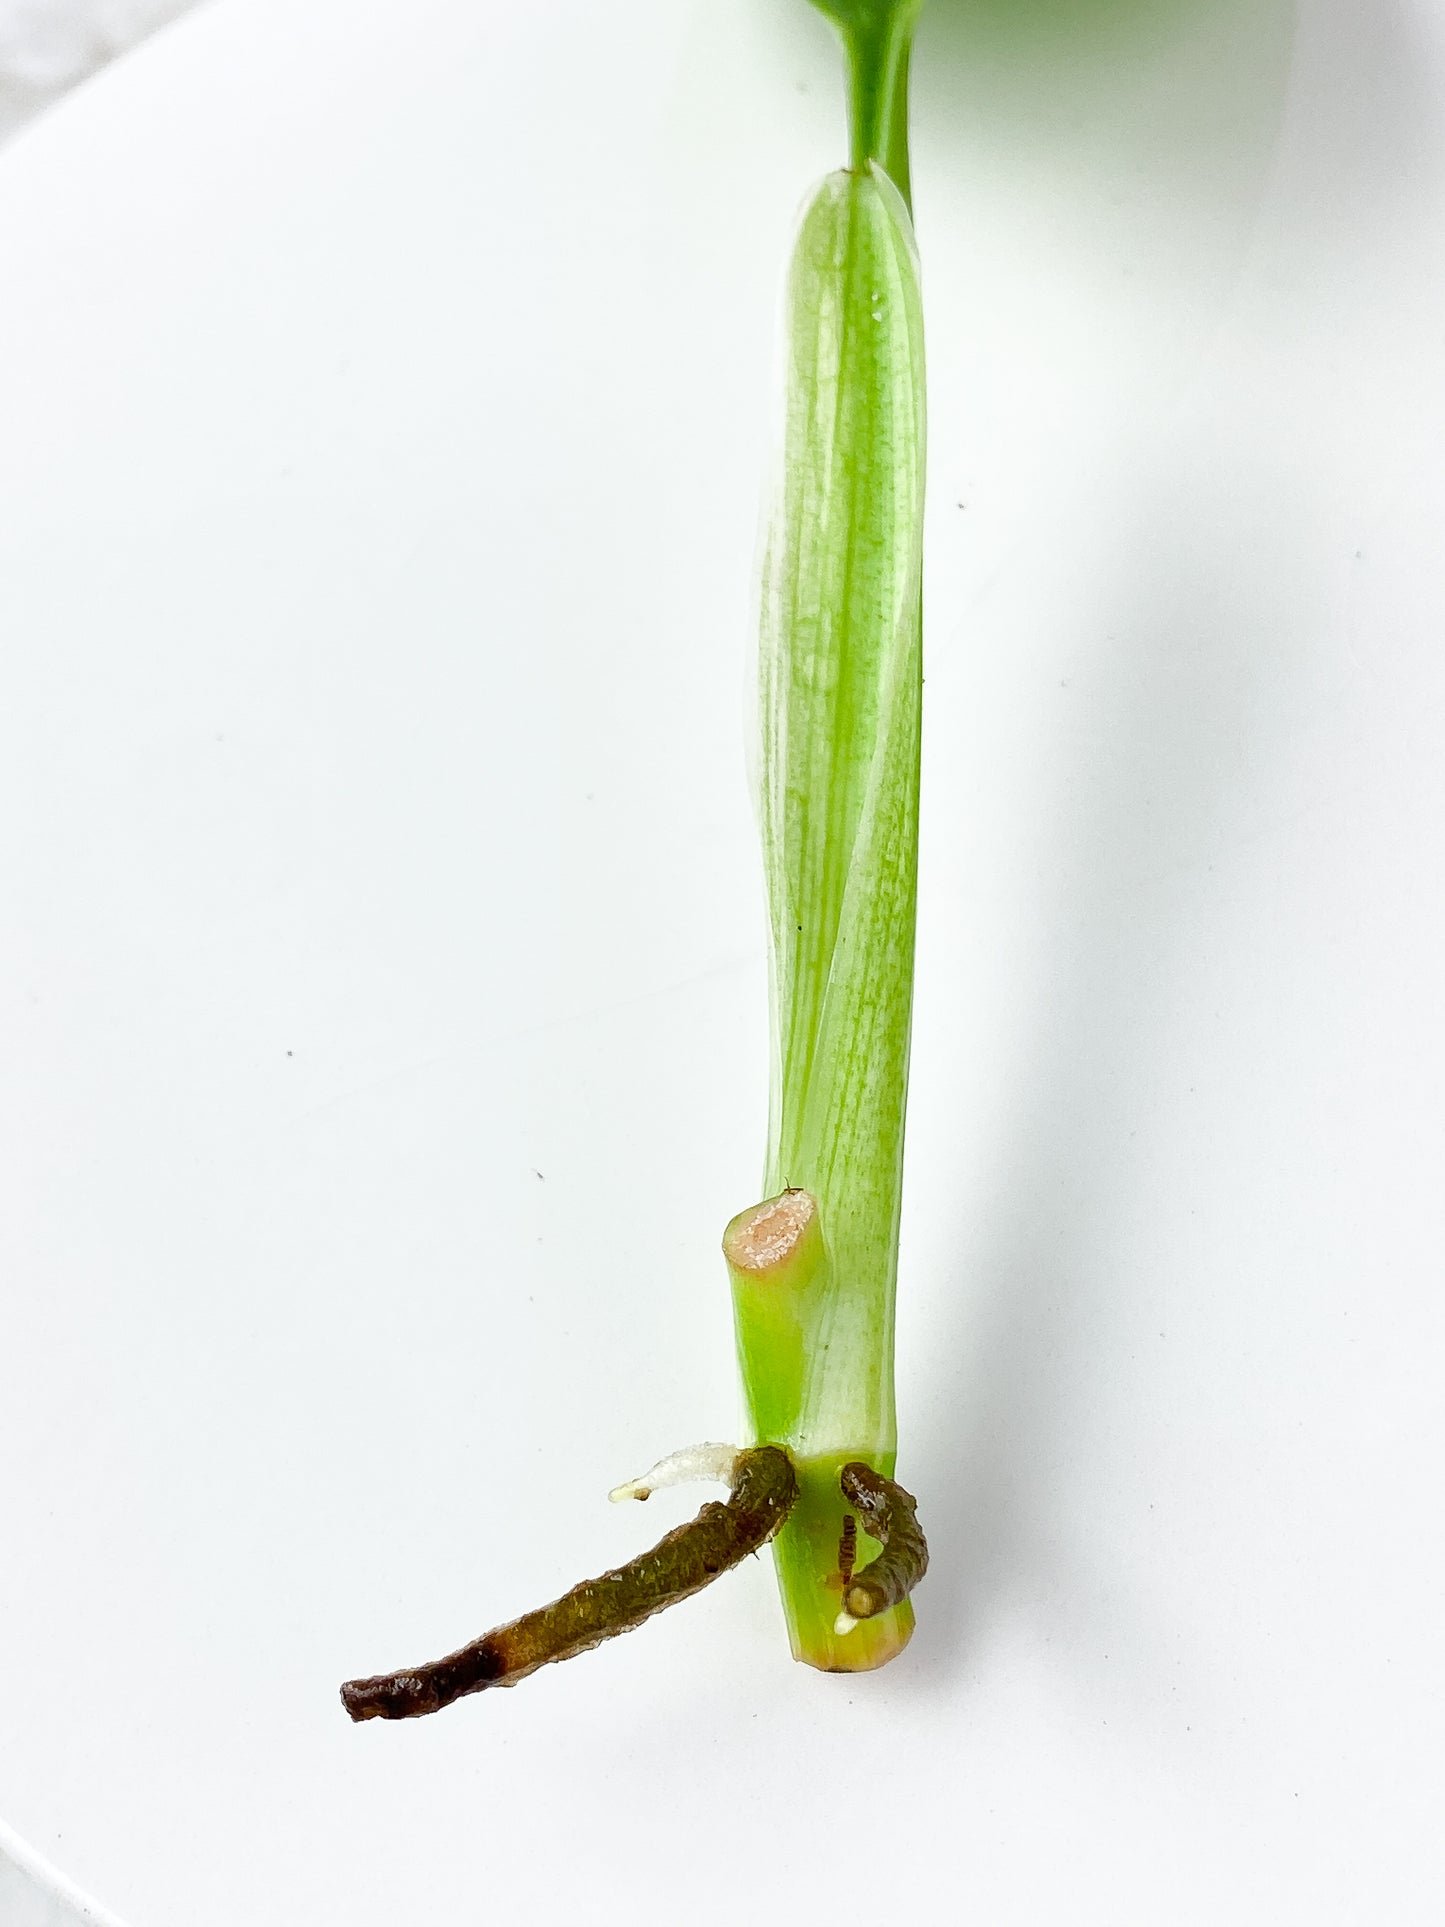 Monstera Standleyana Aurea  1 leaf, 1 sprout Rooting